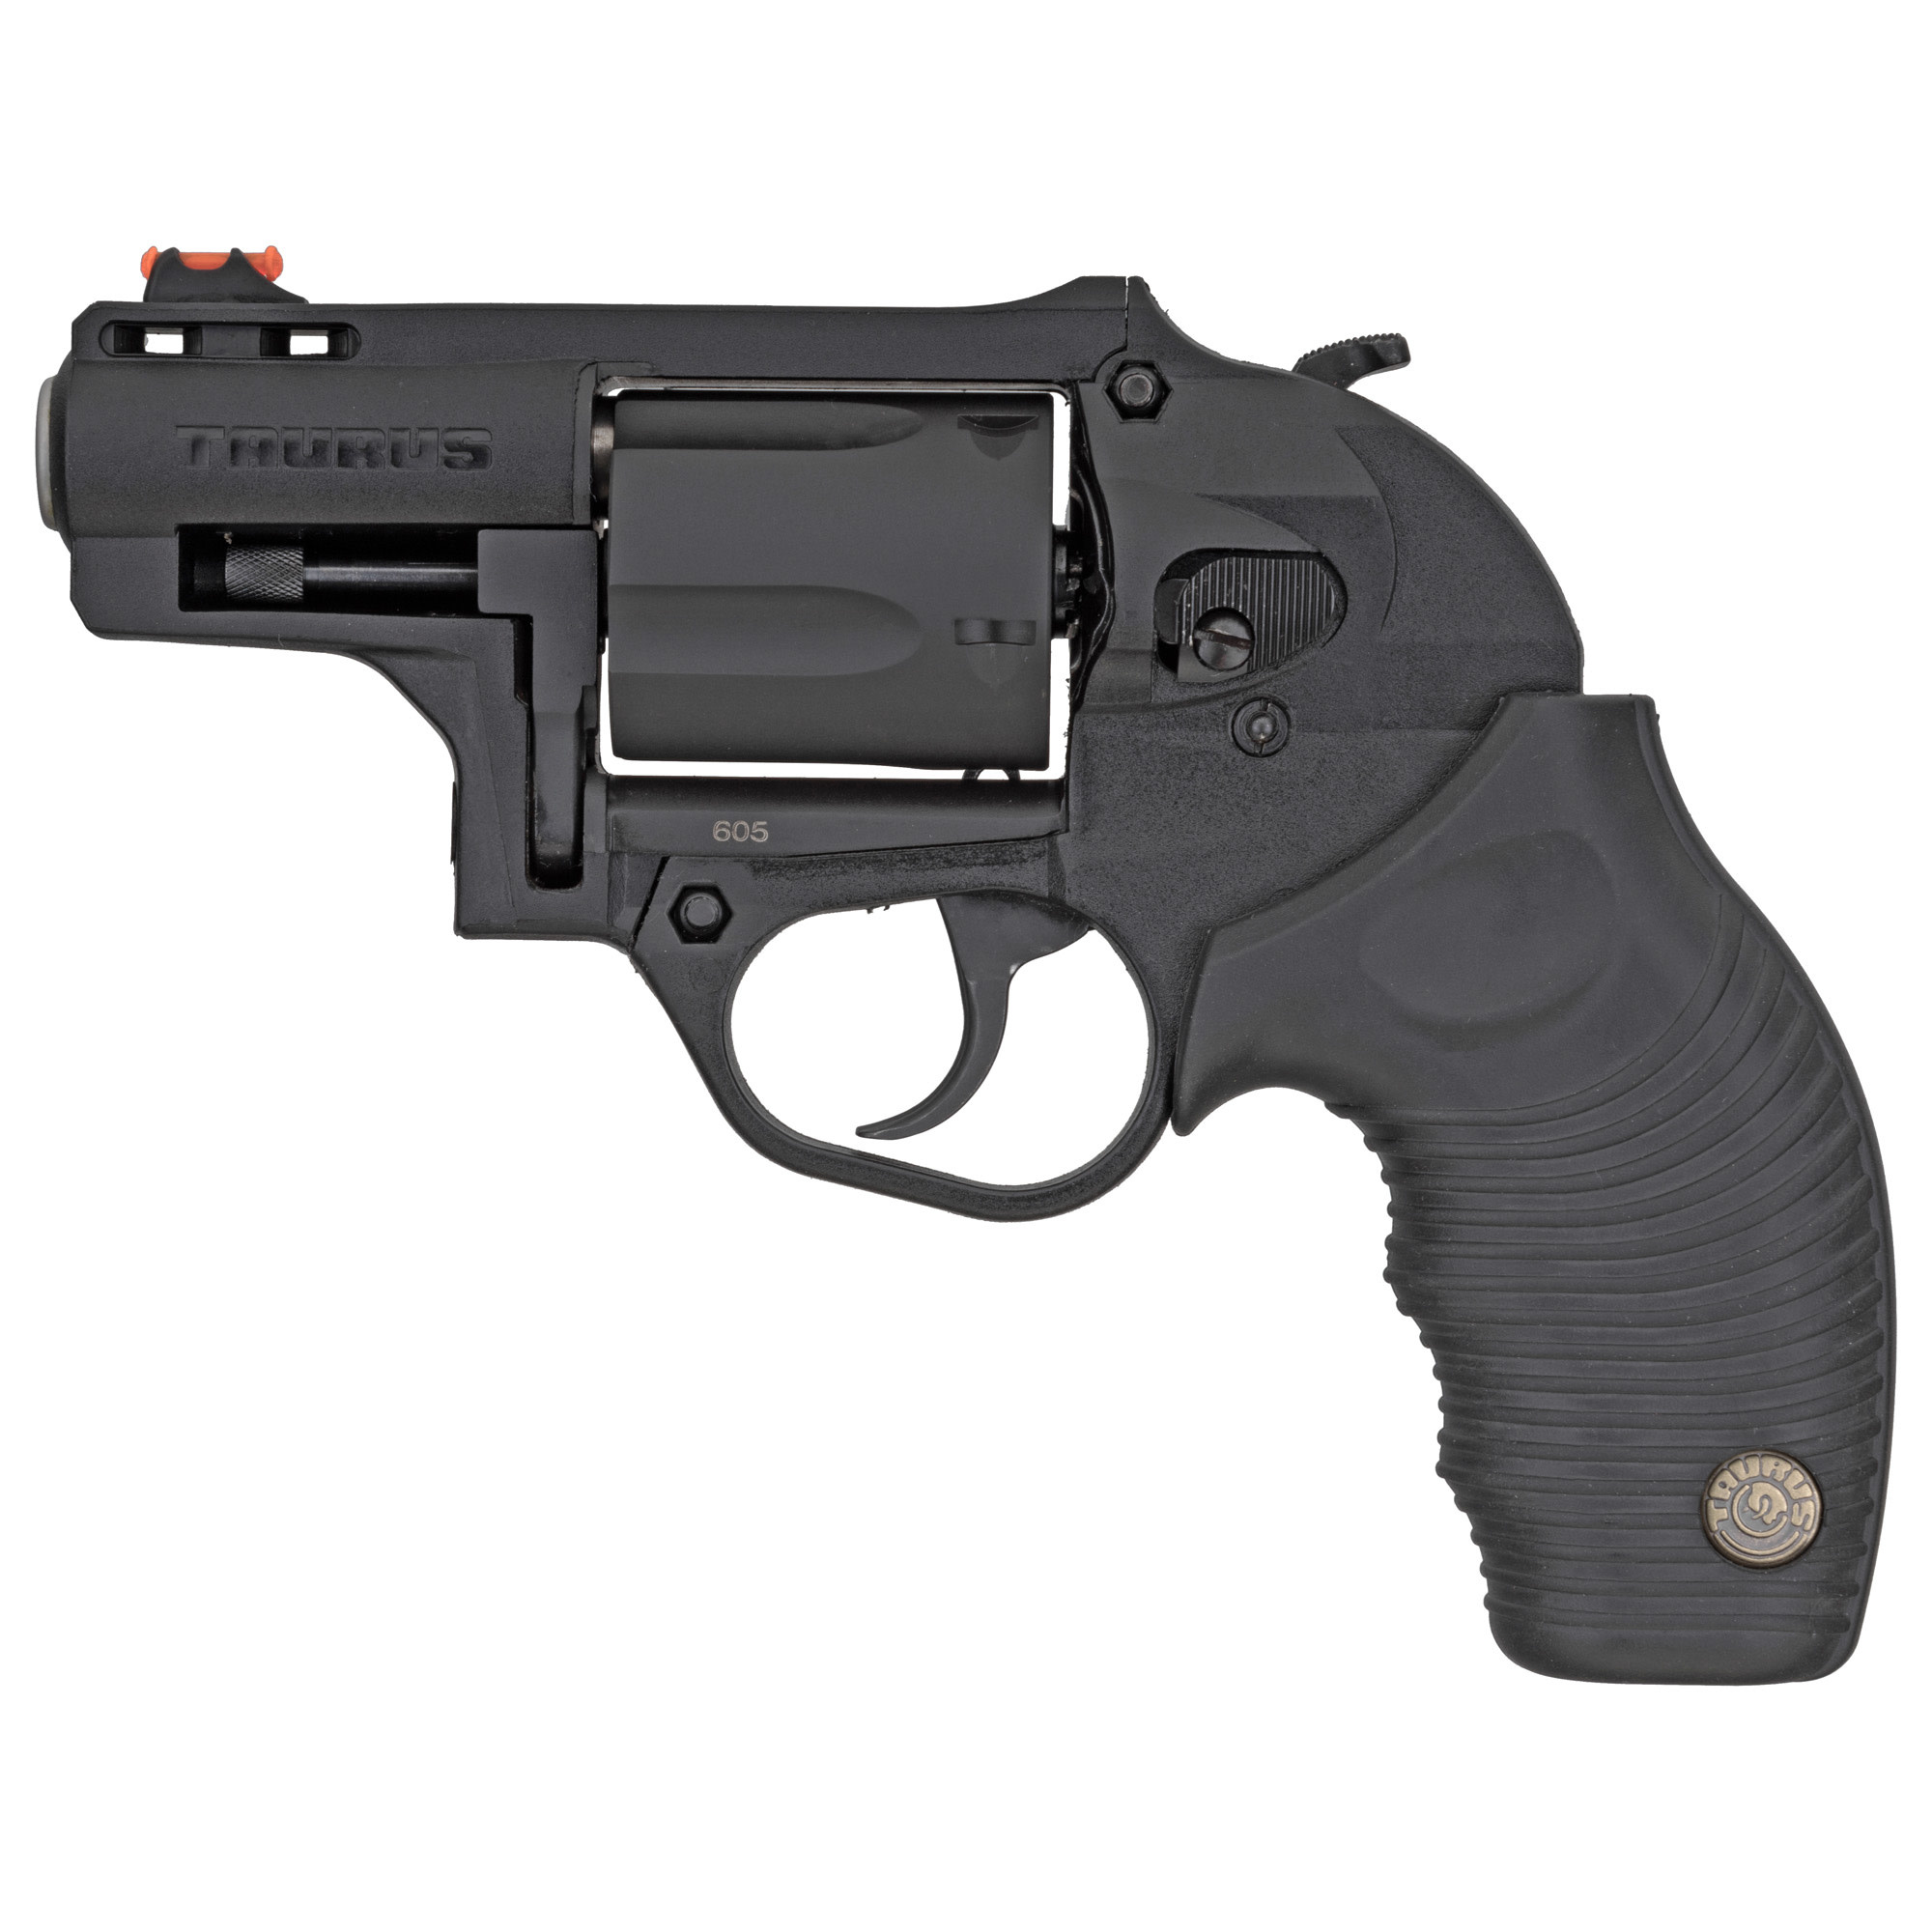 Taurus Model 605 357Mag 2" BLK/BLK 5RD Revolver